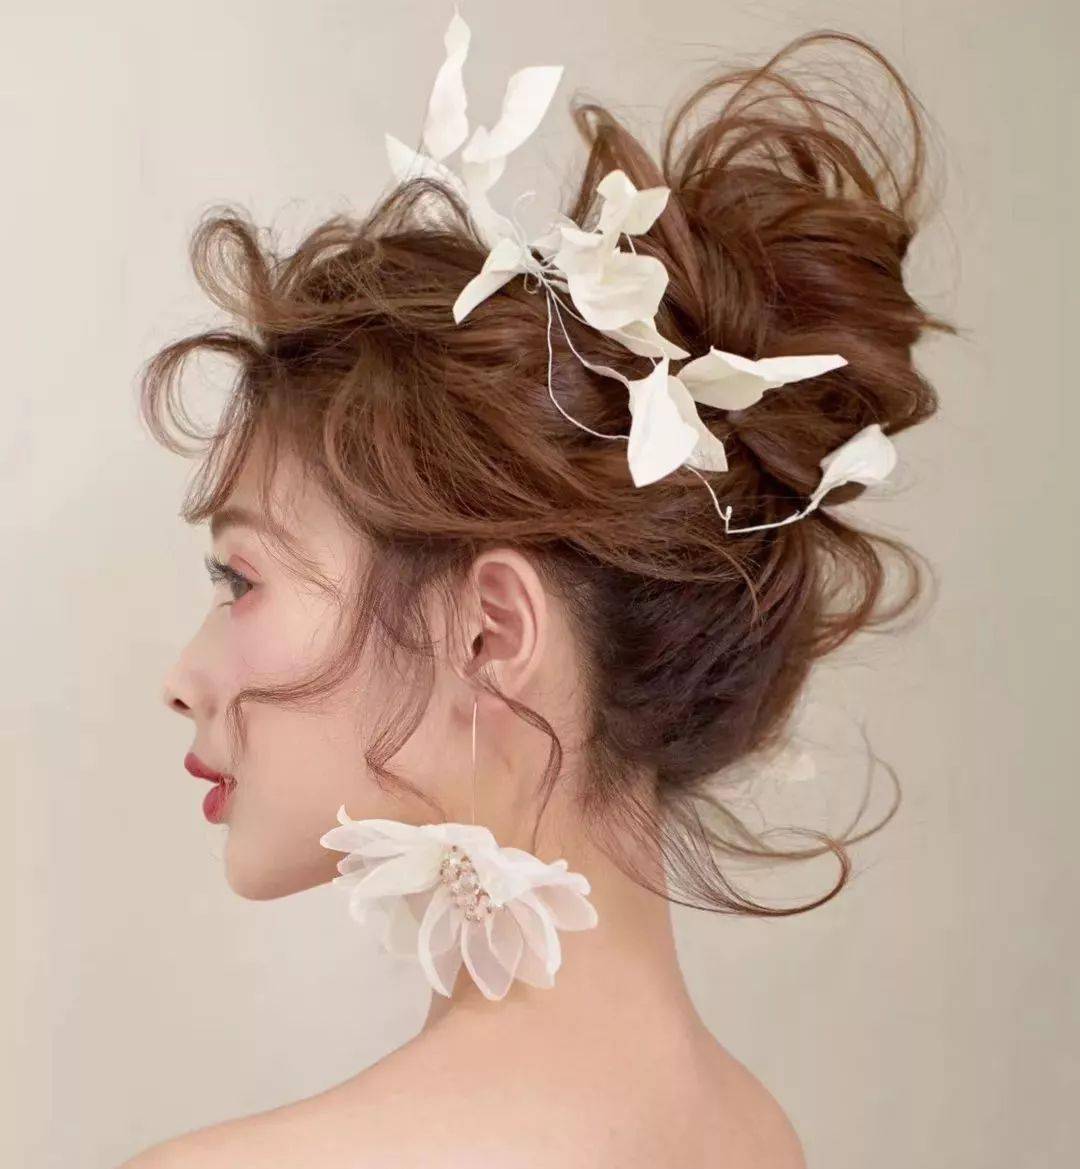 时尚空气感抽丝新娘发型流行美到爆